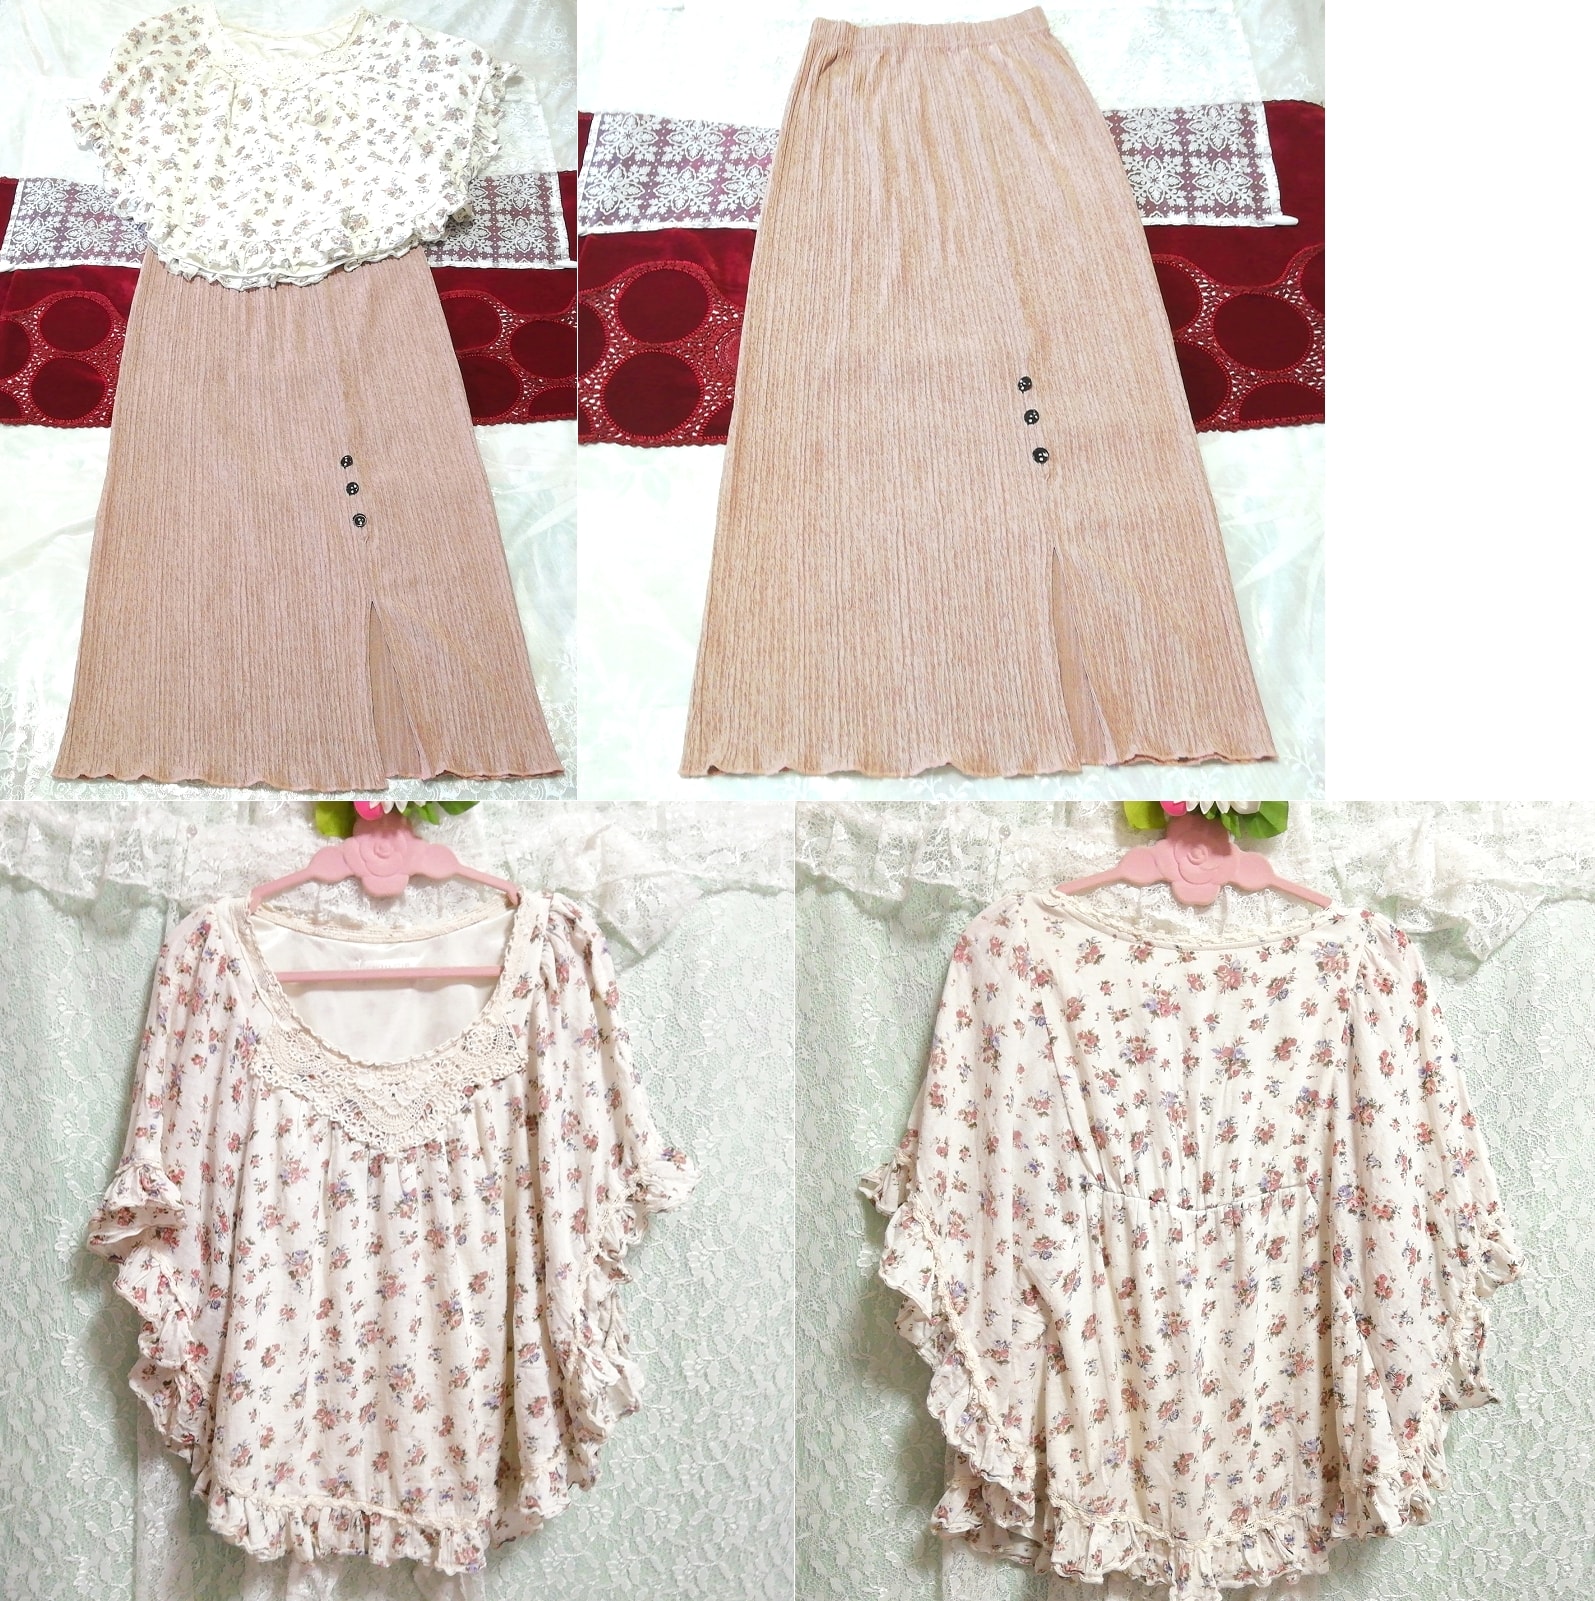 Algodón blanco estampado floral poncho túnica negligee camisón rosa beige maxi falda 2P, moda, moda para damas, ropa de dormir, pijama